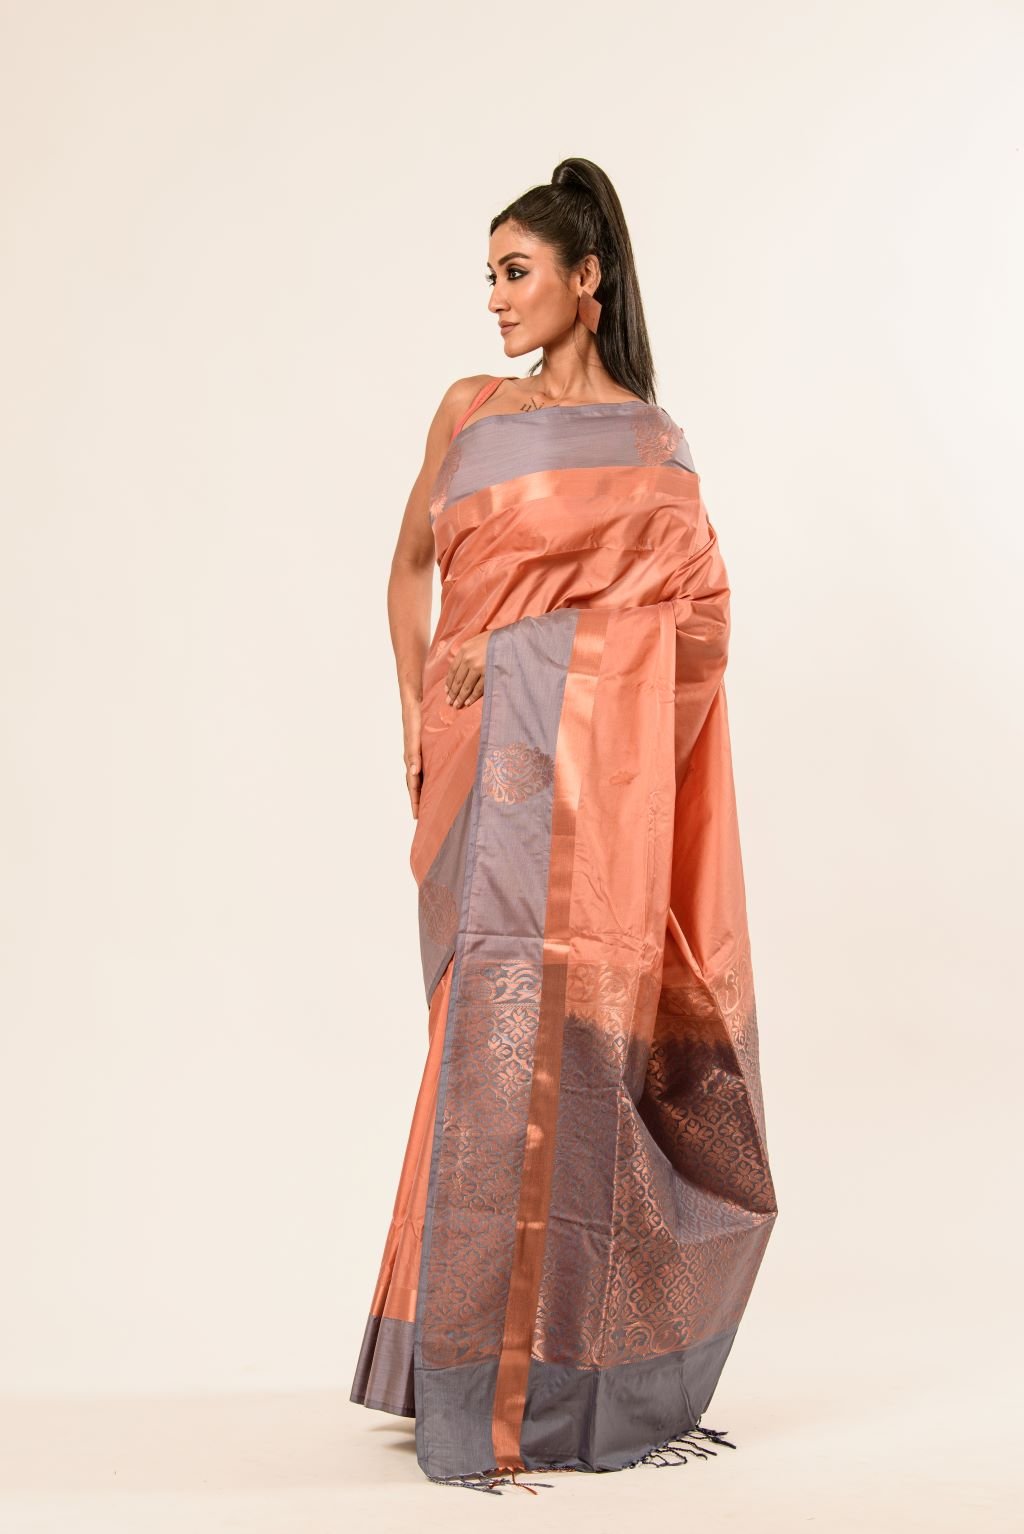 Peach Kanjivaram Silk Saree with Gray Border - Anvi Couture